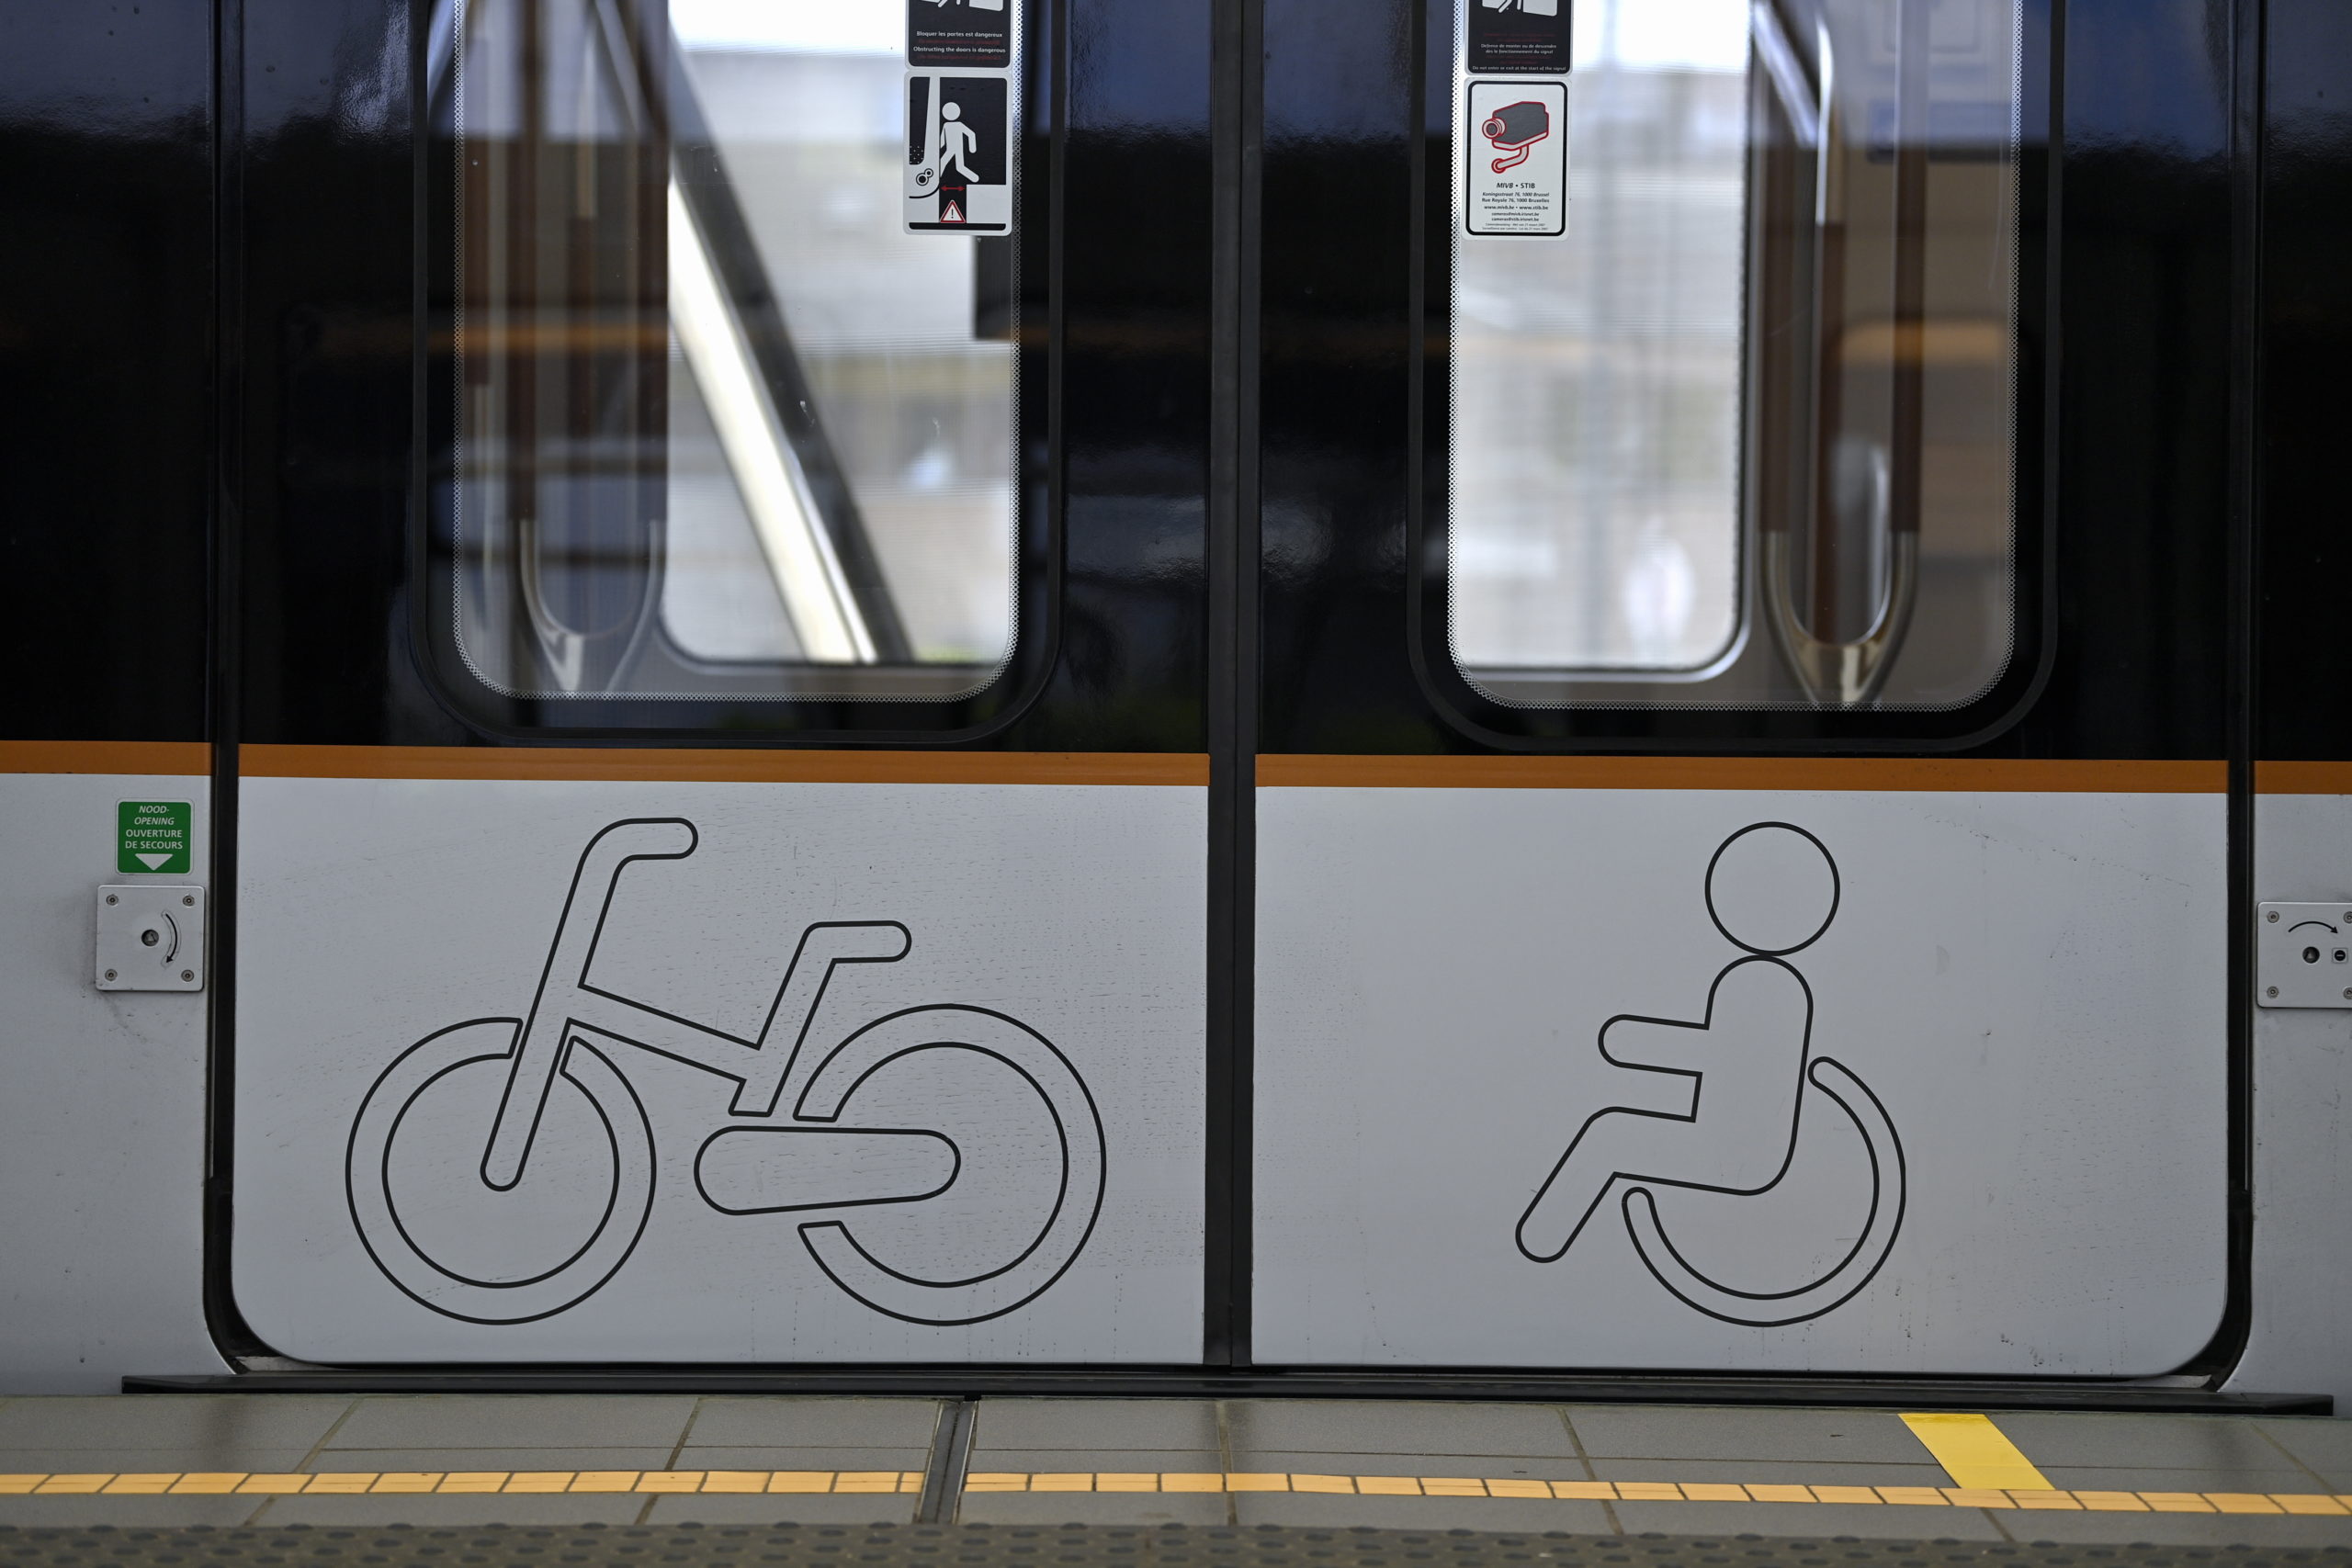 Les tramways bruxellois plus accessibles aux personnes en fauteuil roulant grâce à une bordure en caoutchouc